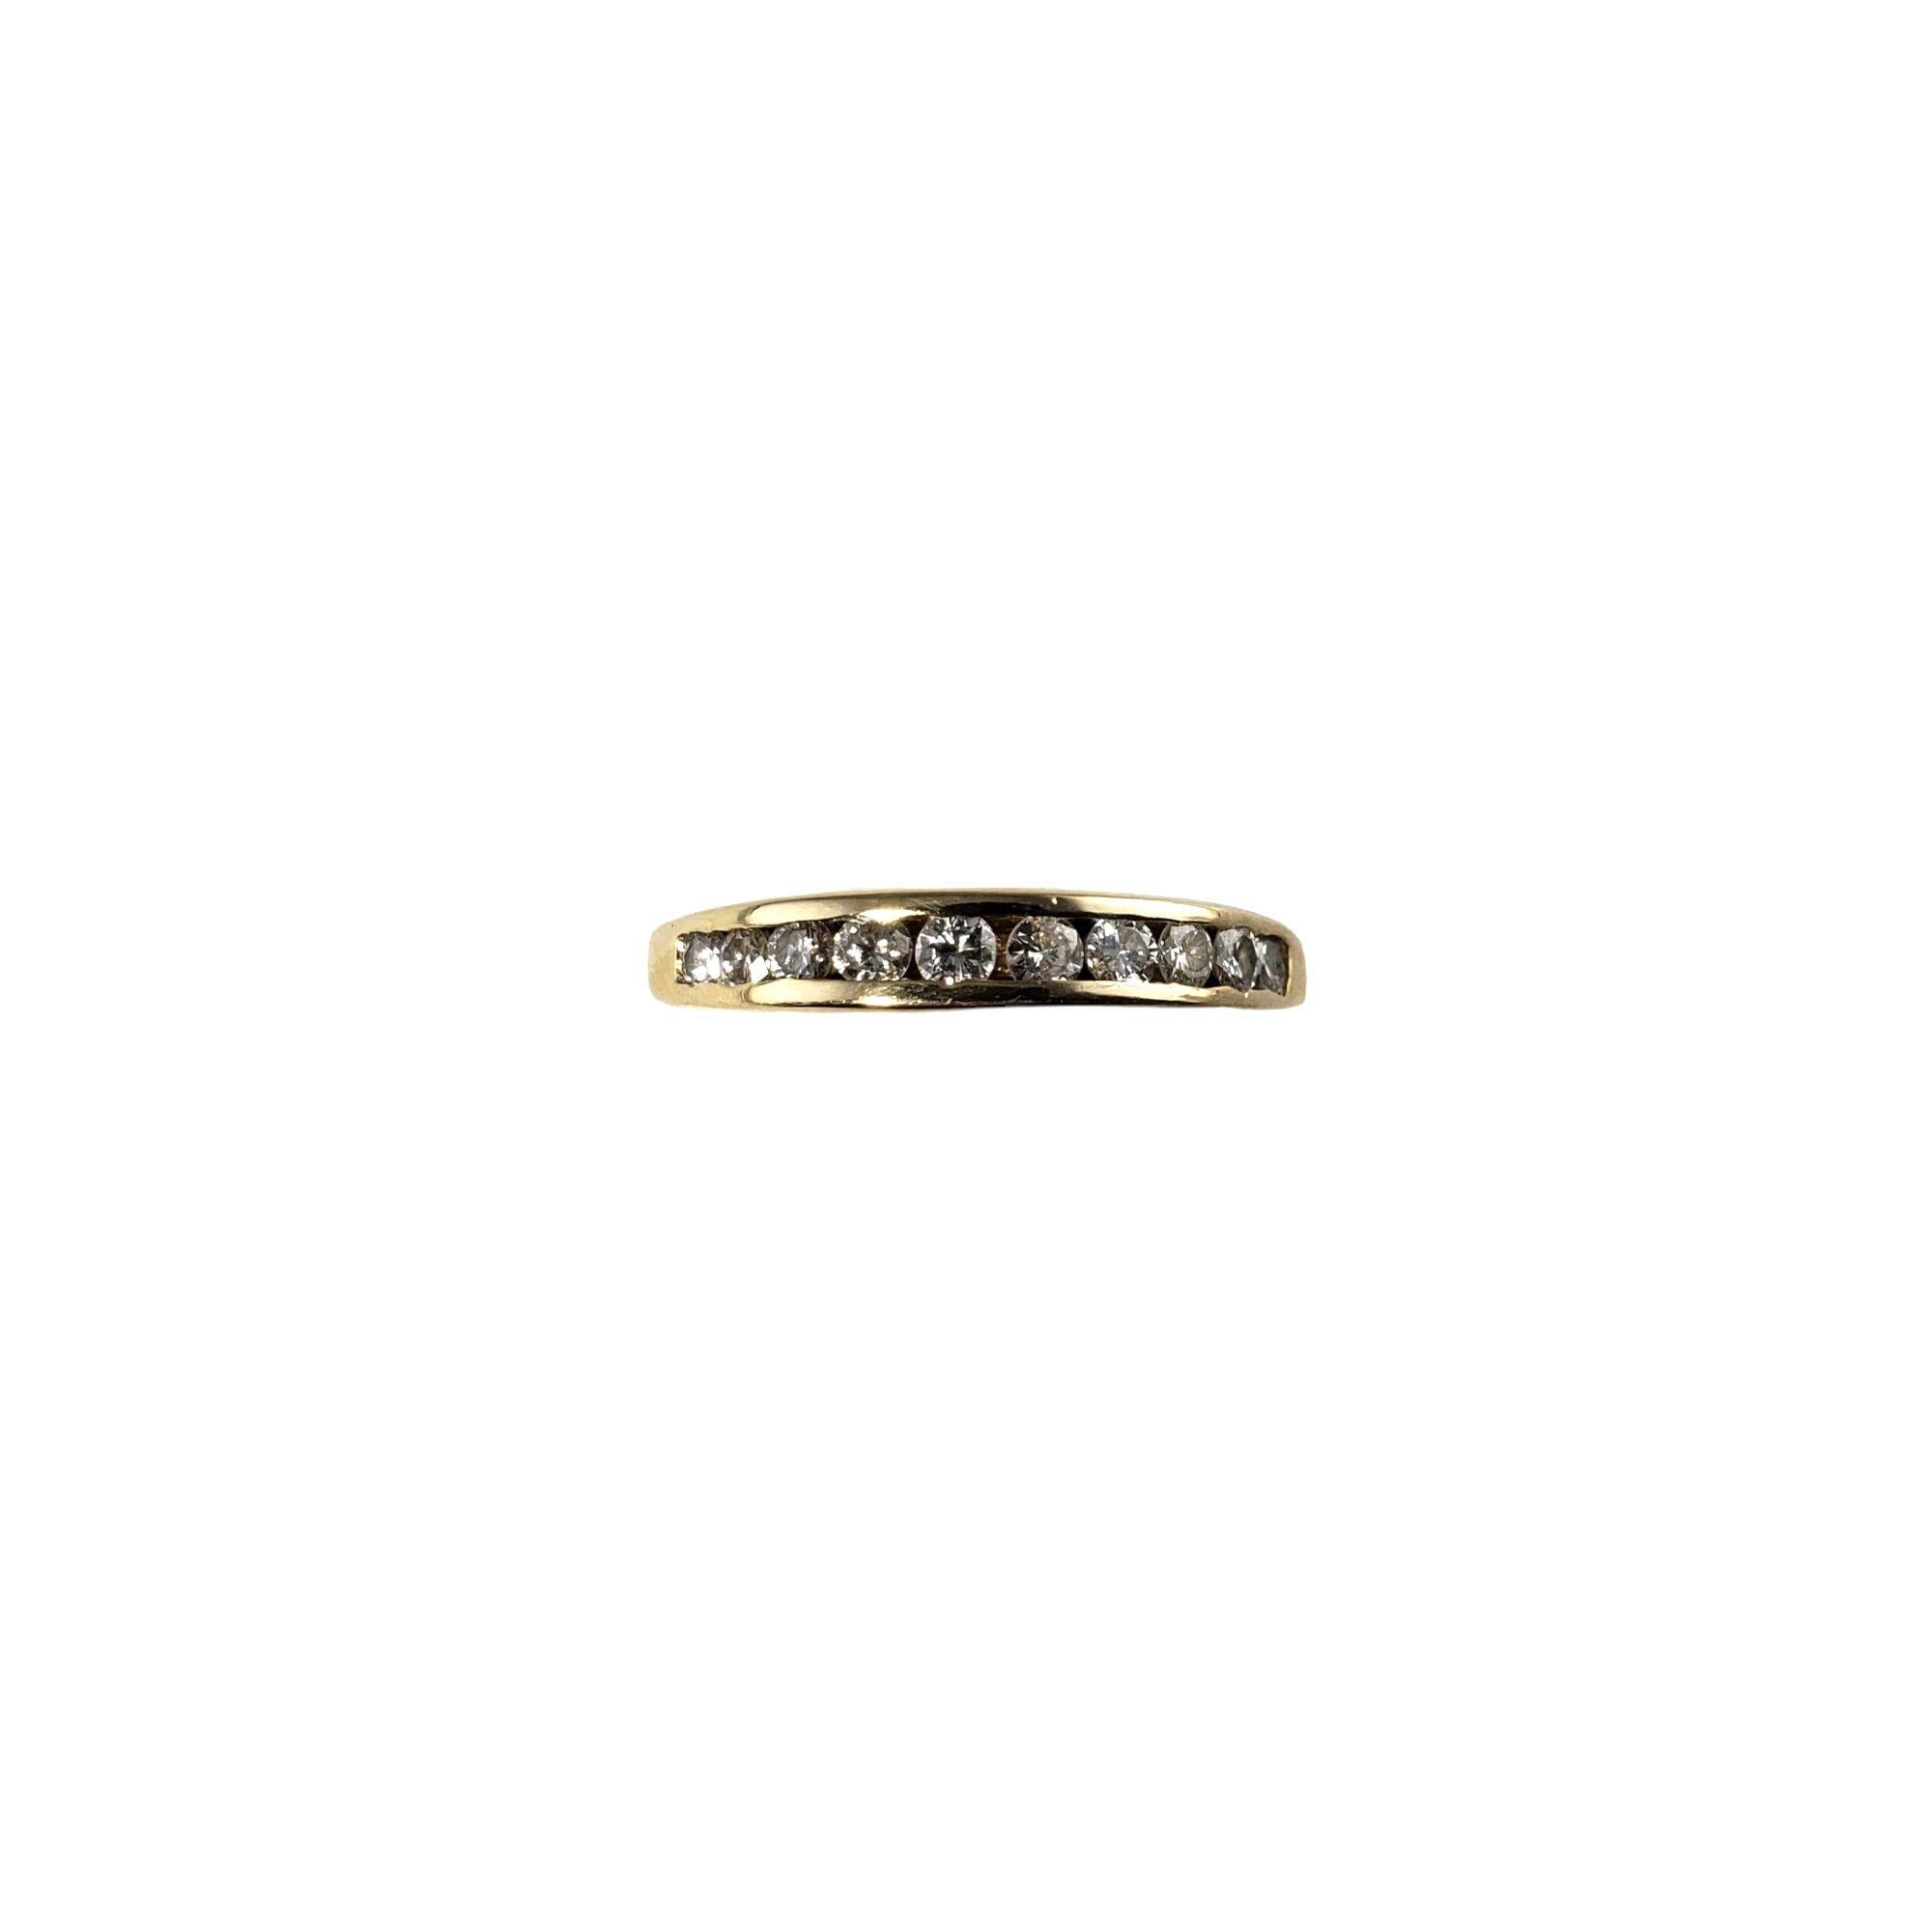 Vintage 14 Karat Yellow Gold Diamond Band Ring Size 6.25-

Ce bracelet étincelant présente neuf diamants ronds de taille brillante sertis dans de l'or jaune 14K classique. Largeur : 3 mm. Tige : 2 mm.

Poids total approximatif des diamants : 27